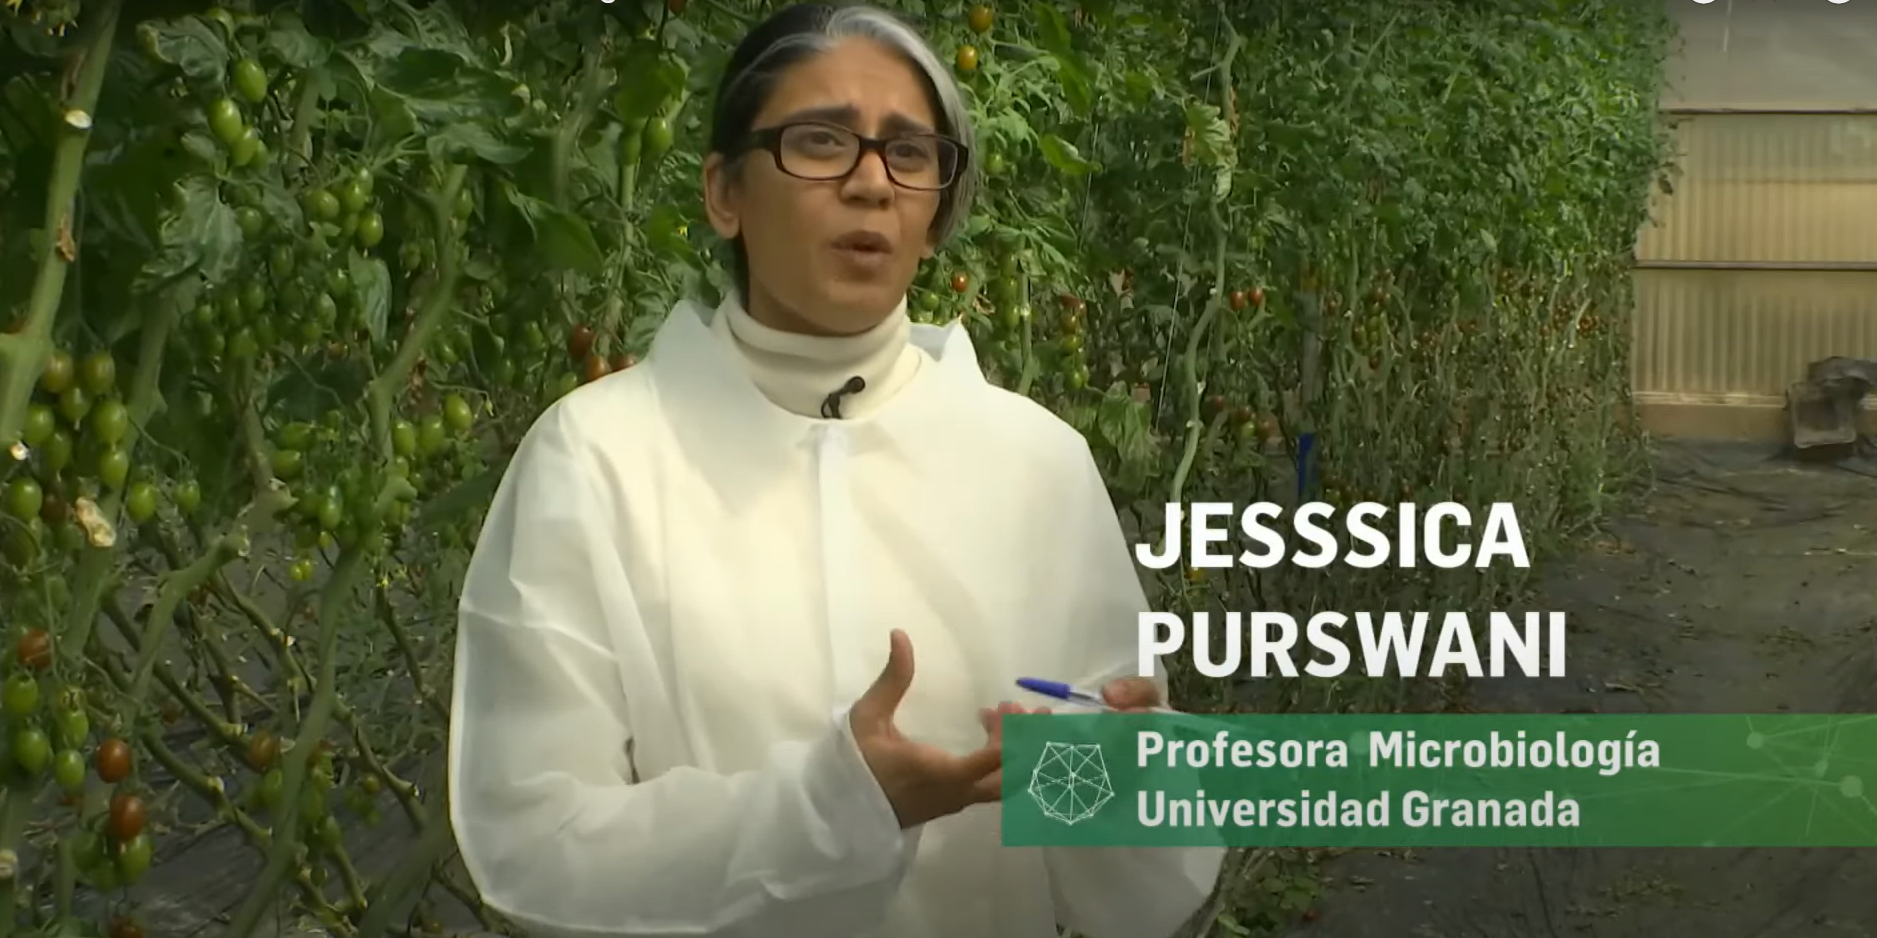 La profesora Jessica Purswani explica los futuros retos y soluciones.